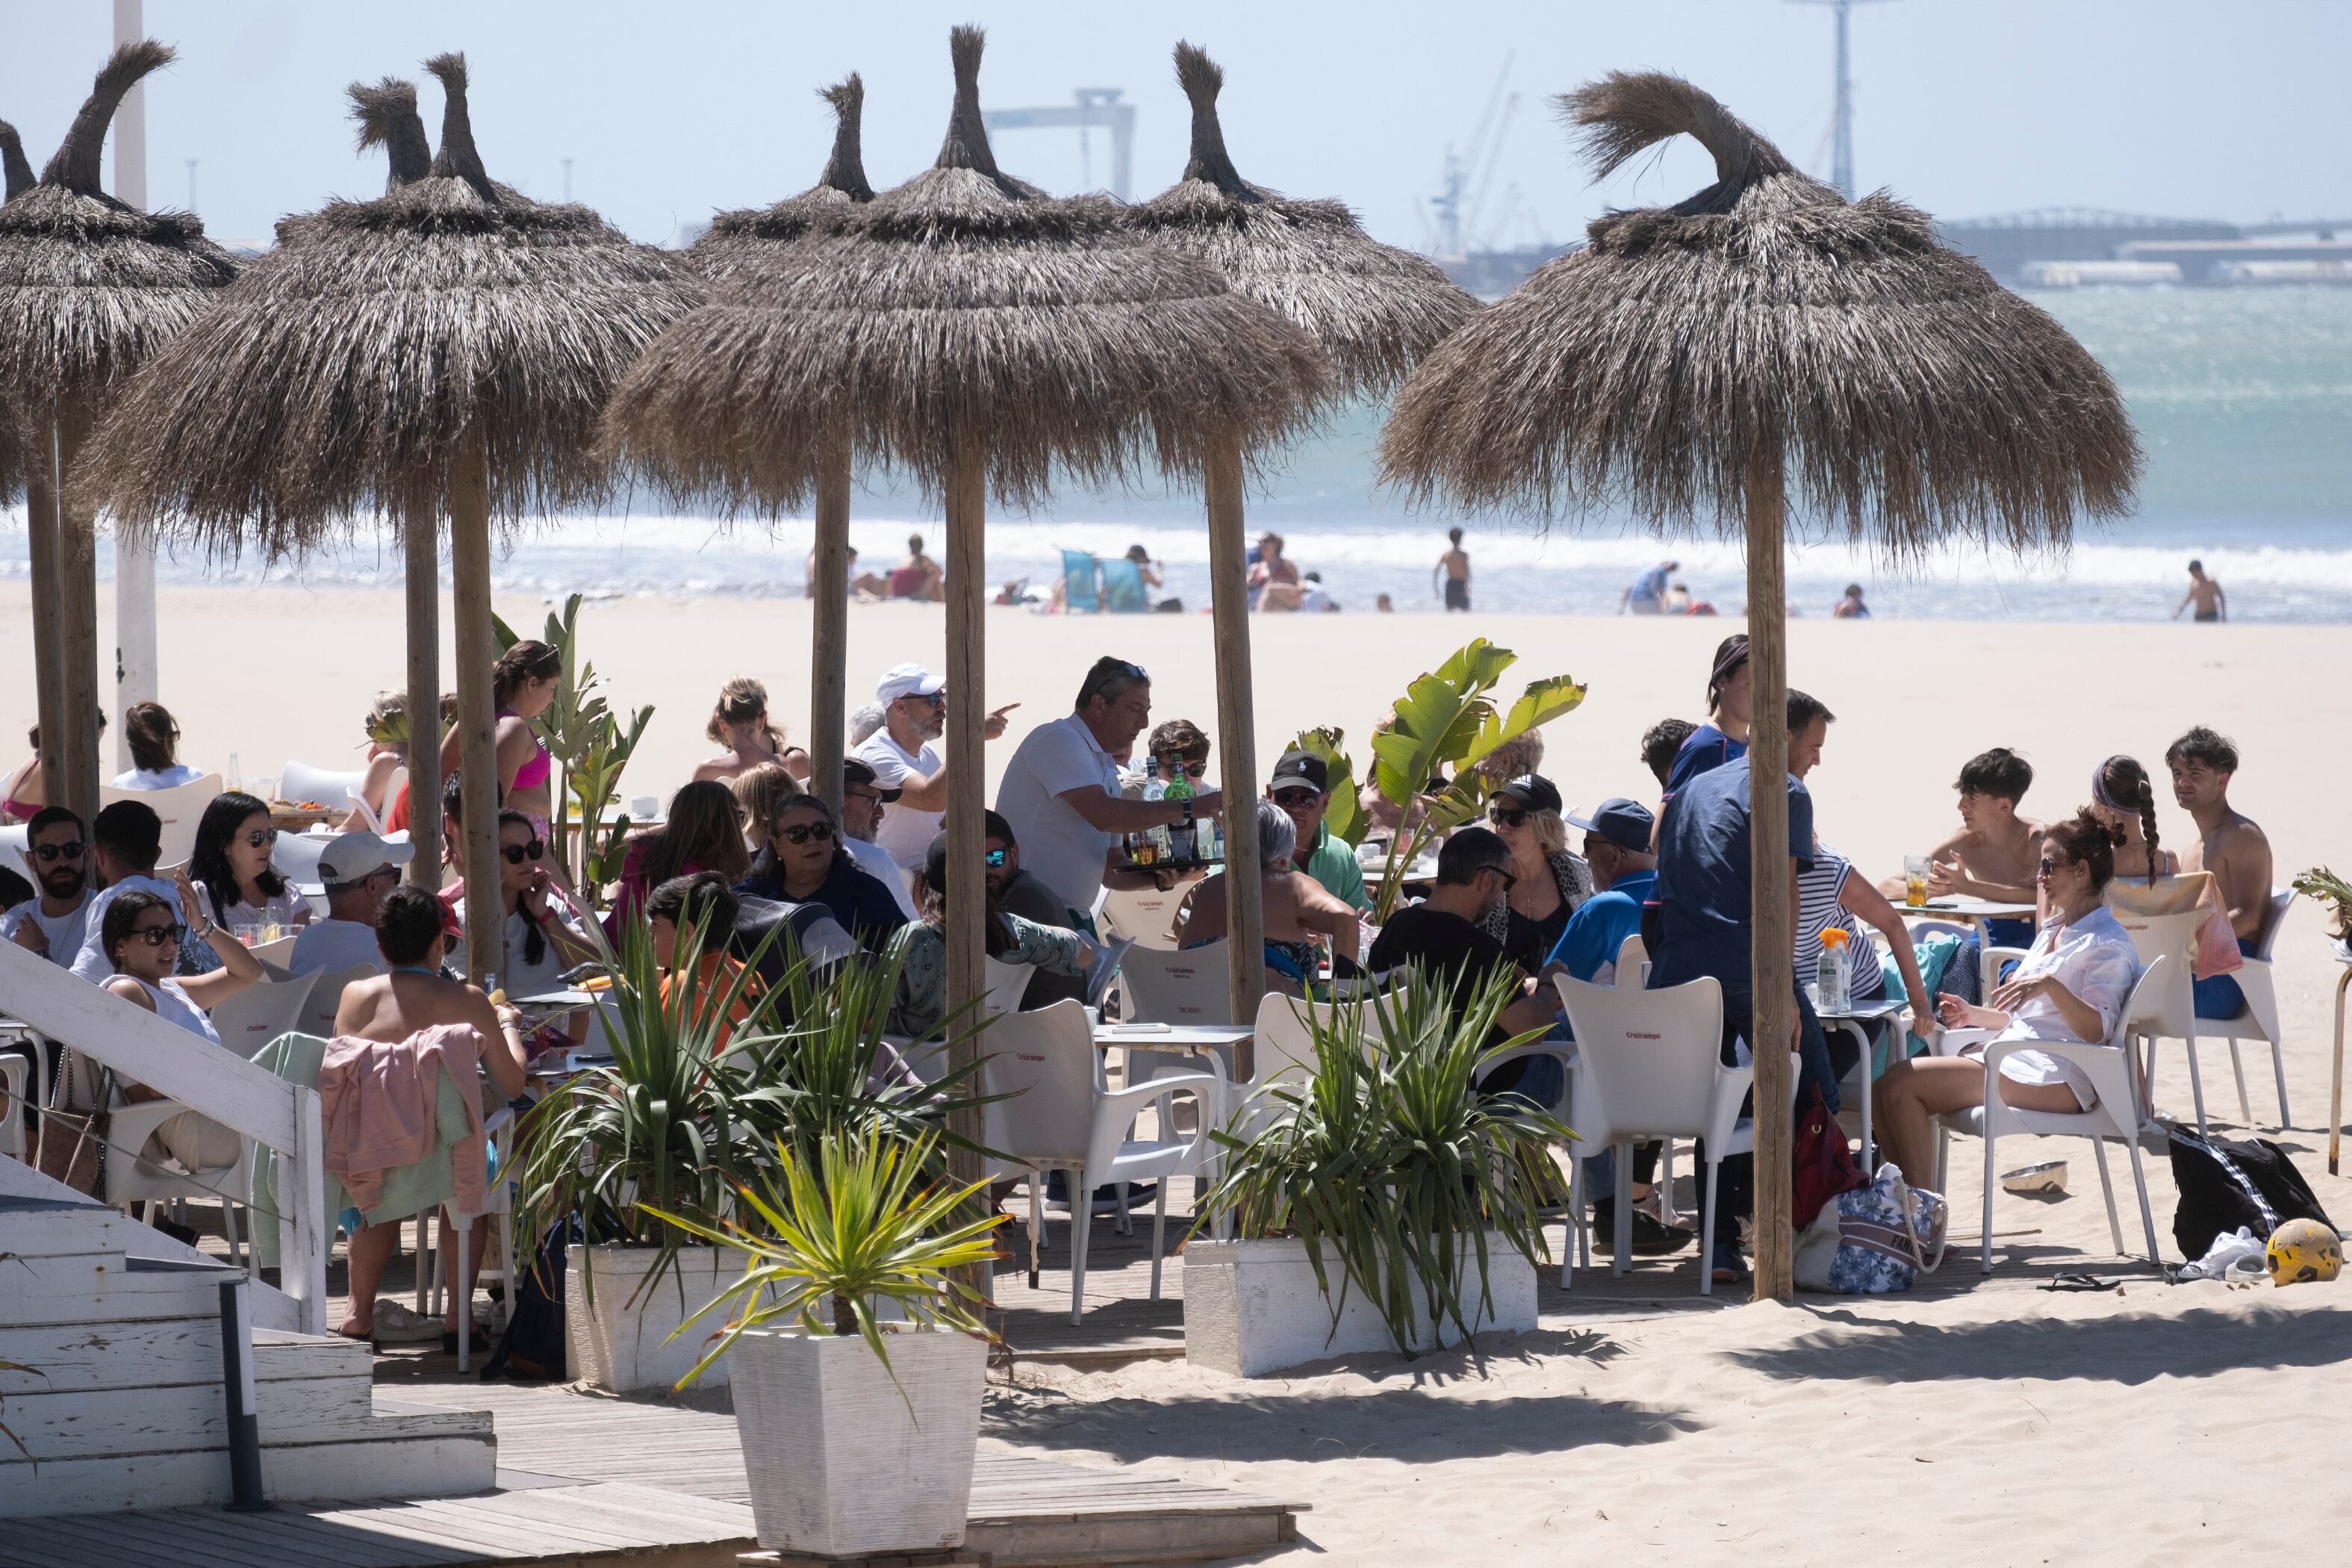 Un chiringuito en la playa de Valdelagrana, en El Puerto de Santa María, lleno de turistas durante la Semana Santa